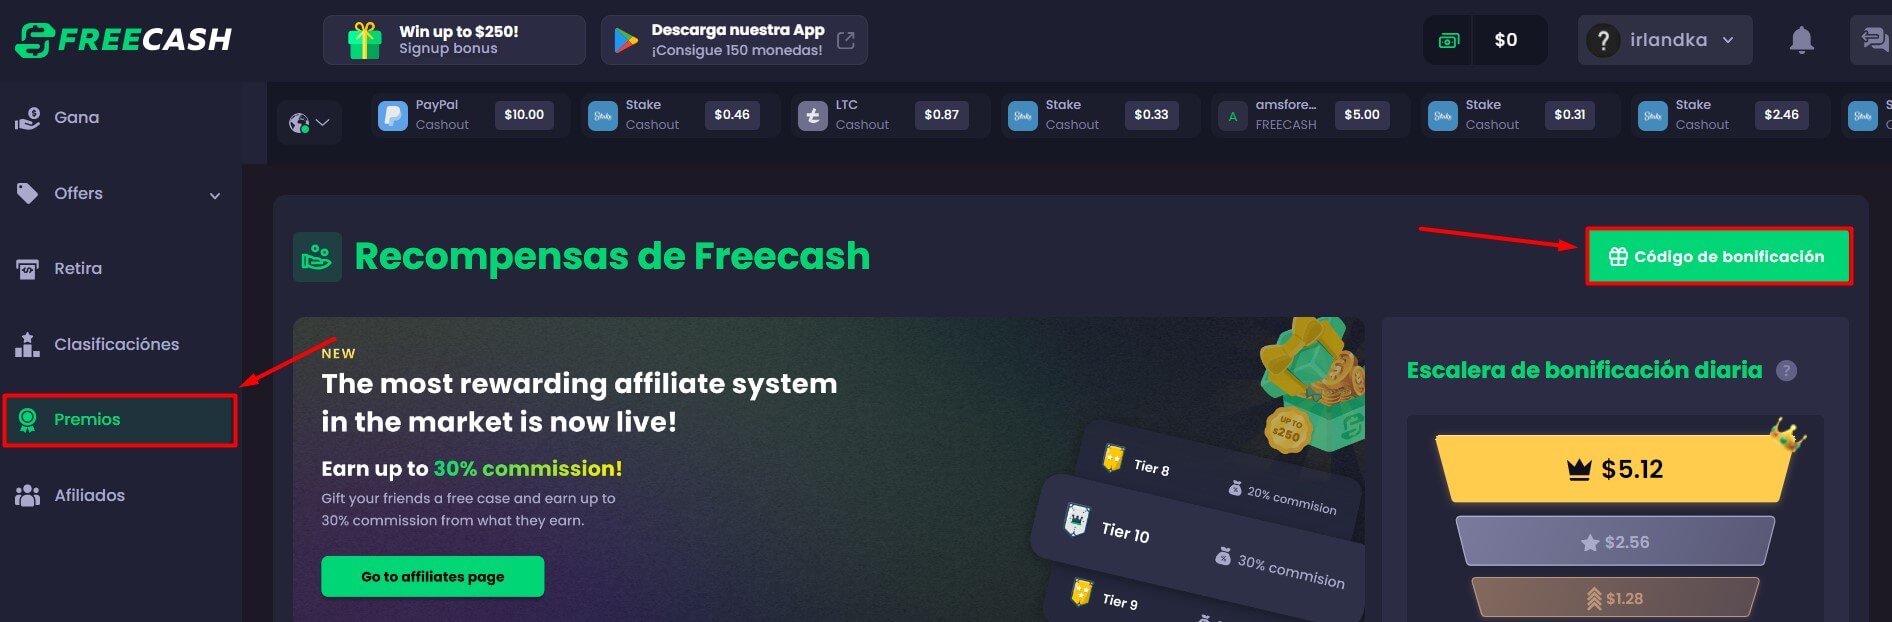 freecash clic en premios